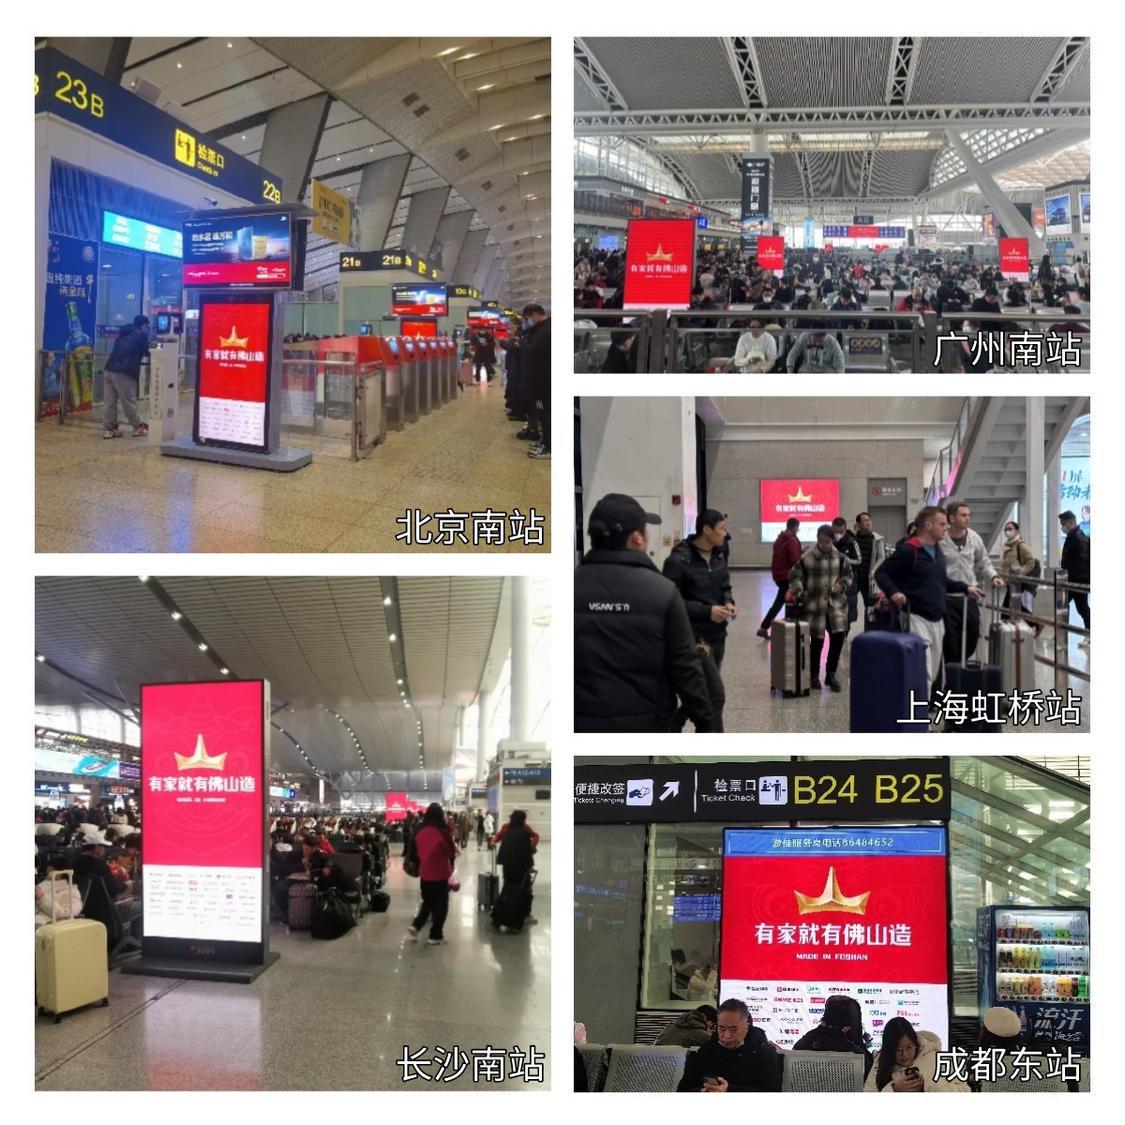 北京、广州、上海、成都、长沙五座城市的高铁站刊出“有家就有佛山造”宣传海报。